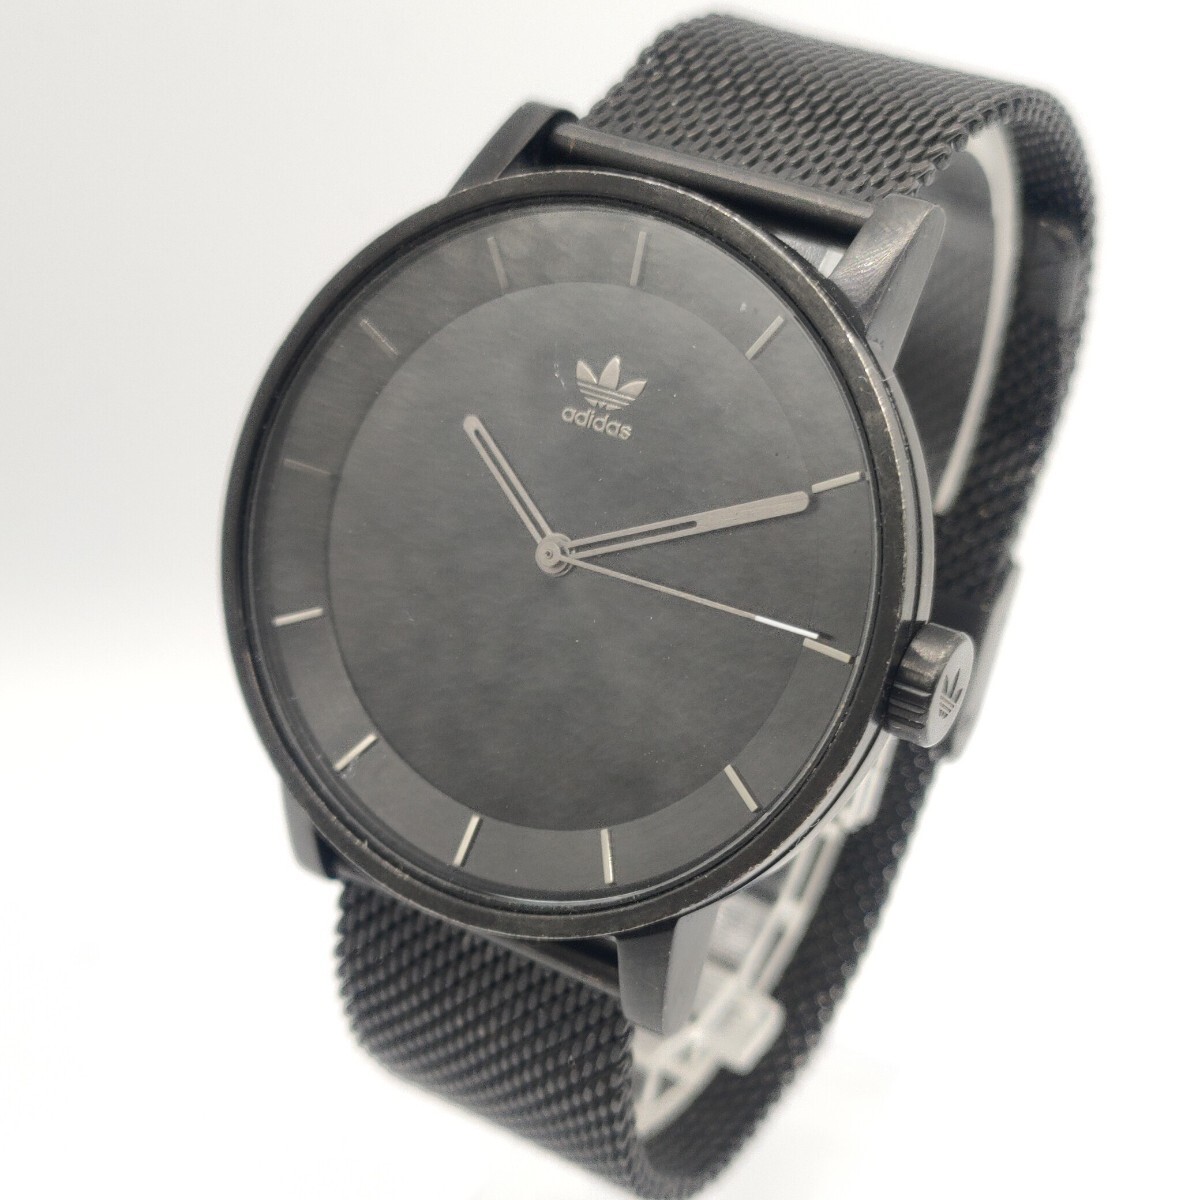 102 adidas メンズ 腕時計 時計 アディダス Z042341-00 クオーツ クォーツ QUARTZ 黒文字盤 3針 アナログ メッシュベルト SCHの画像1